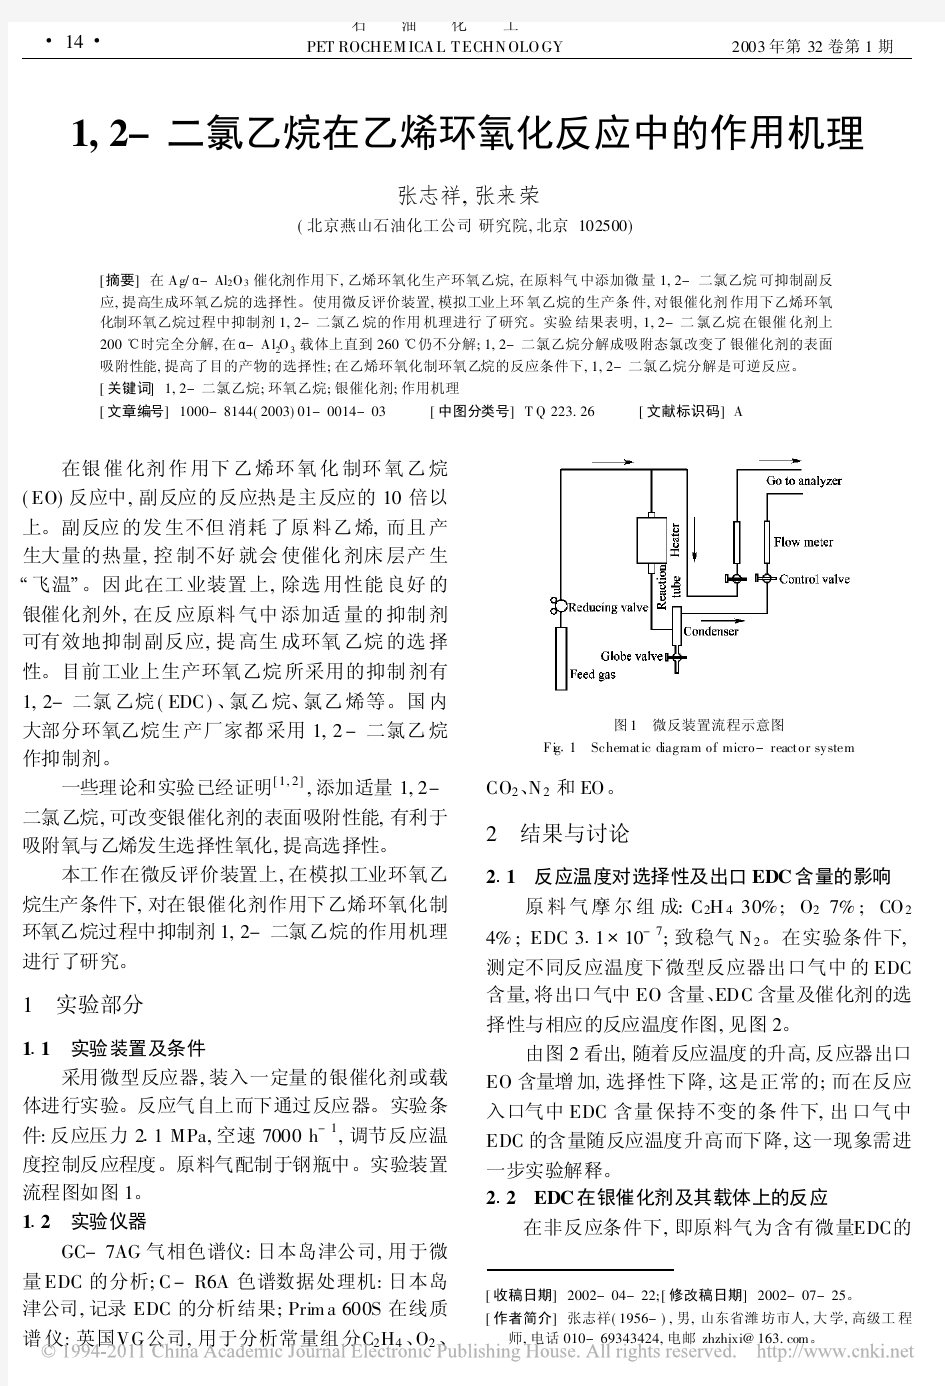 1_2_二氯乙烷在乙烯环氧化反应中的作用机理_张志祥